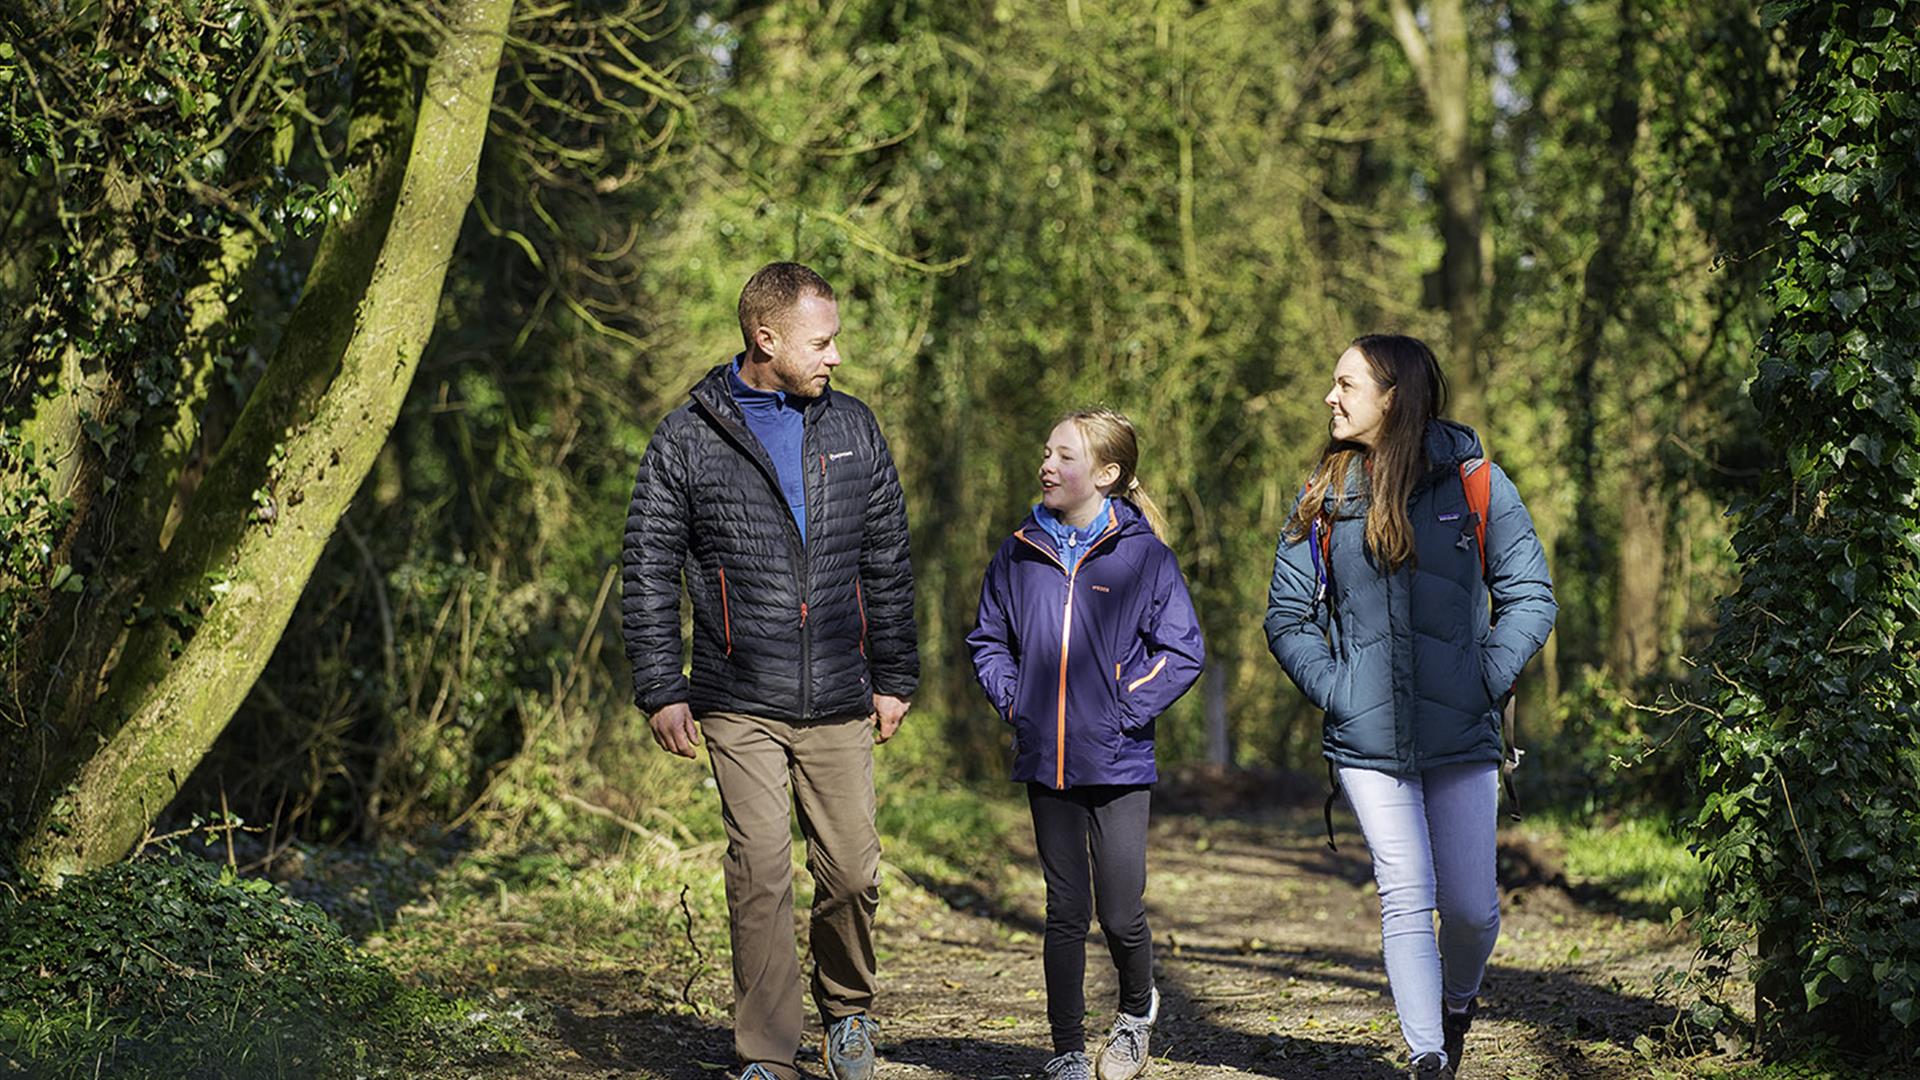 A family walk along a woodland path at Ballyronan Wood.